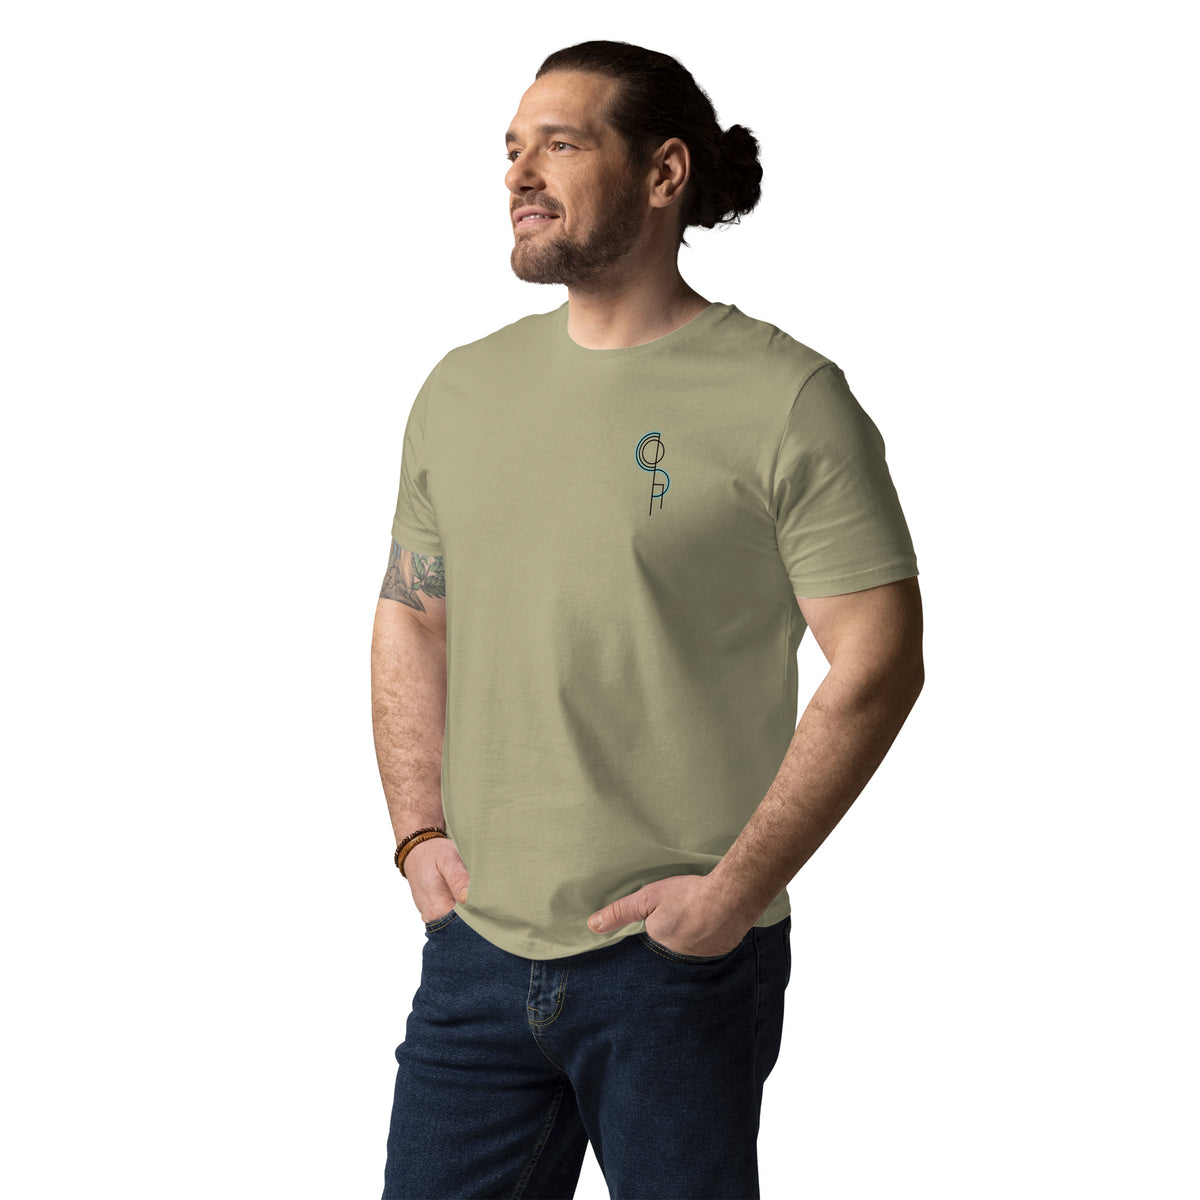 DerSocha - Herren-T-Shirt aus Bio-Baumwolle mit Druck